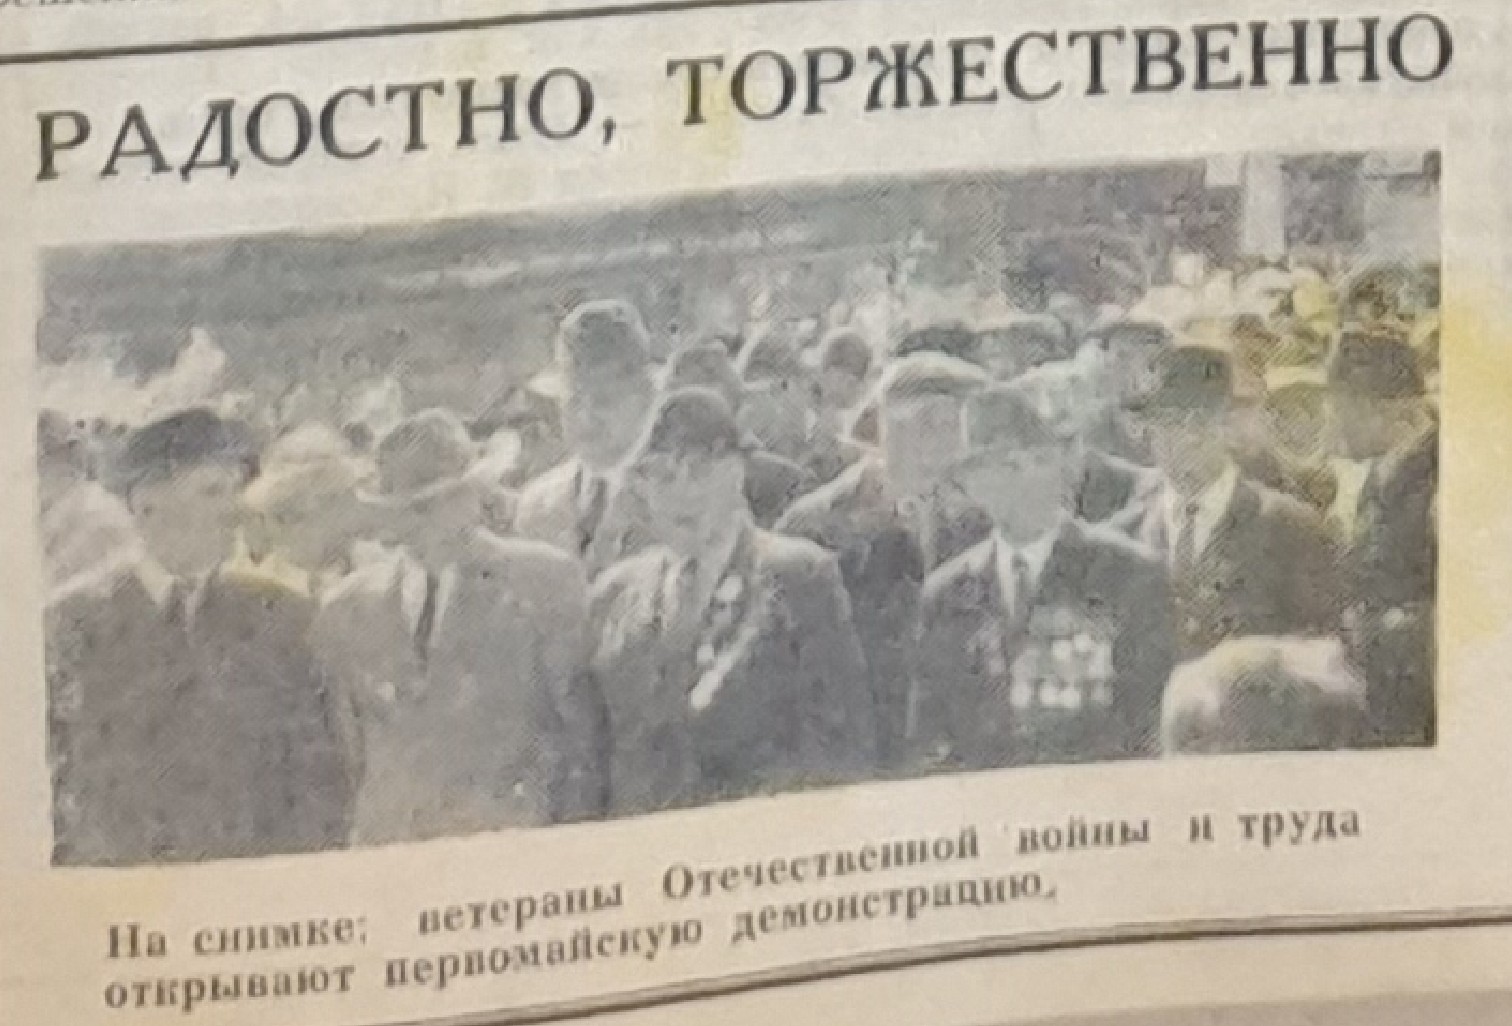 ветераны Отечественной войны и труда открывают первомайскую демонстрацию